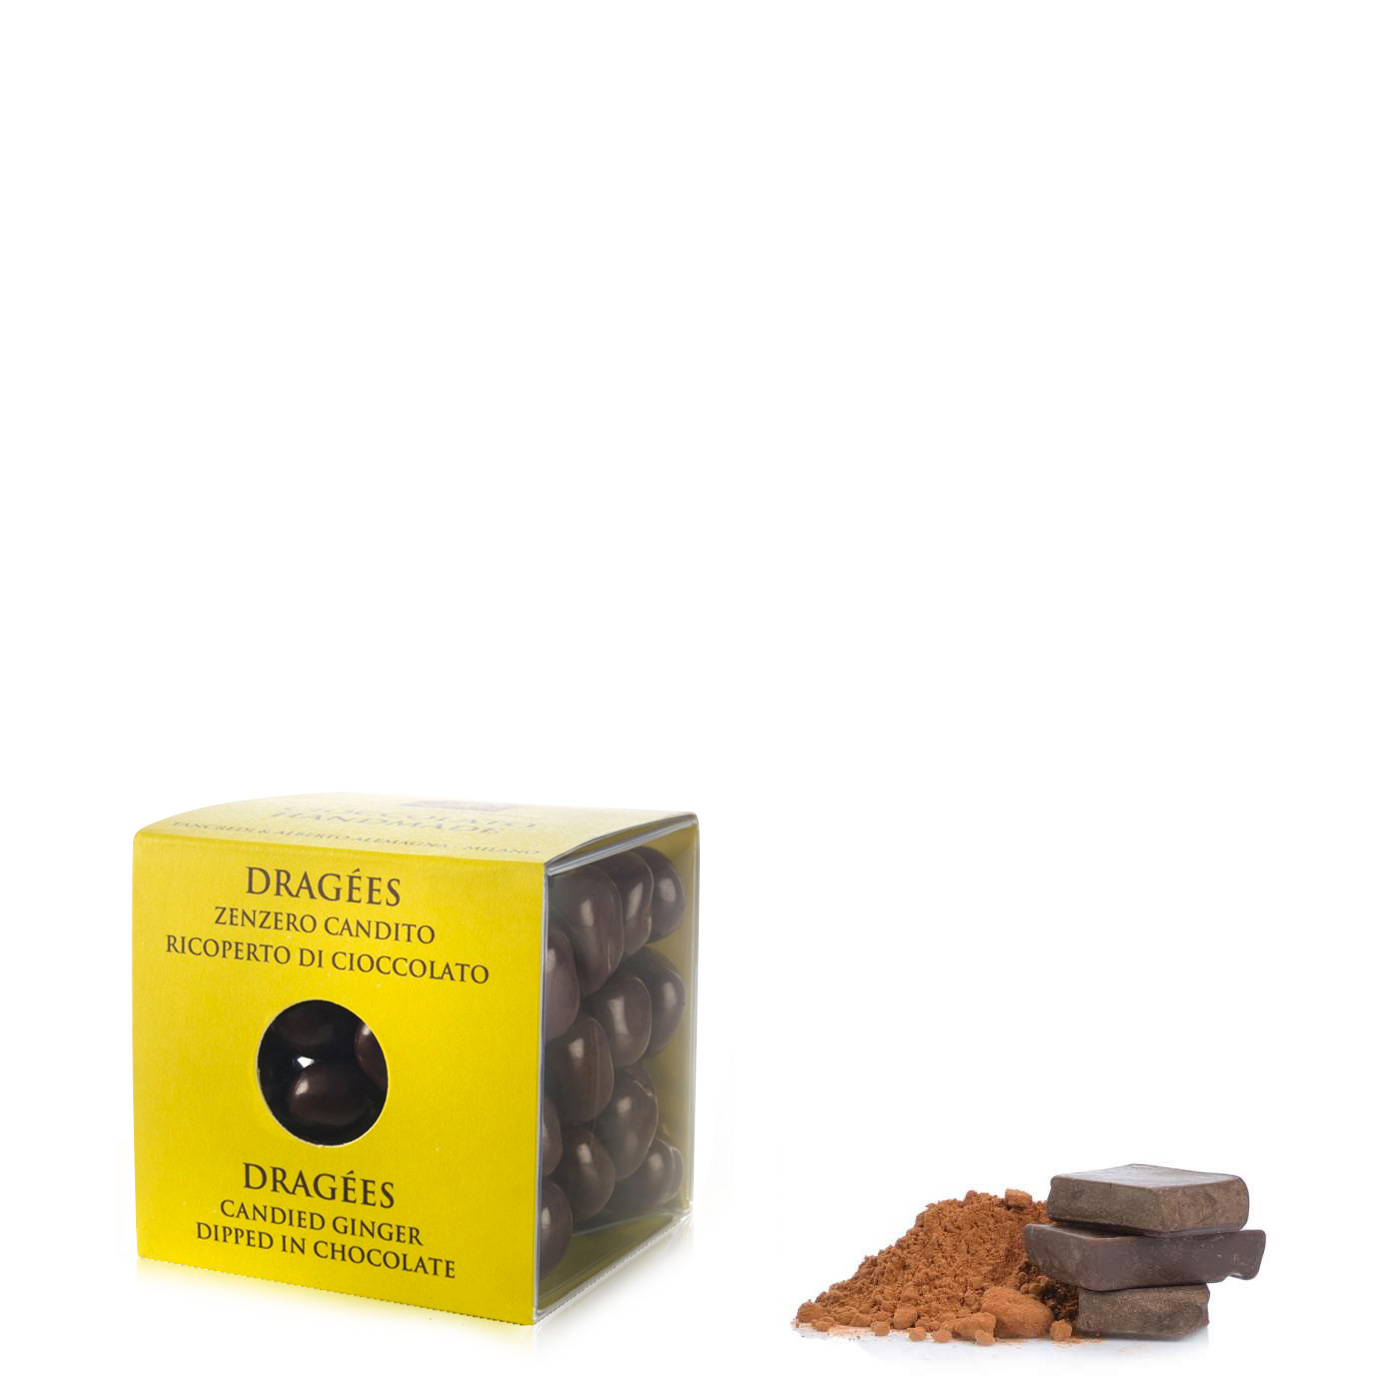 Dragées zenzero candito ricoperto di cioccolato fondente 120g T'A Milano | Eataly